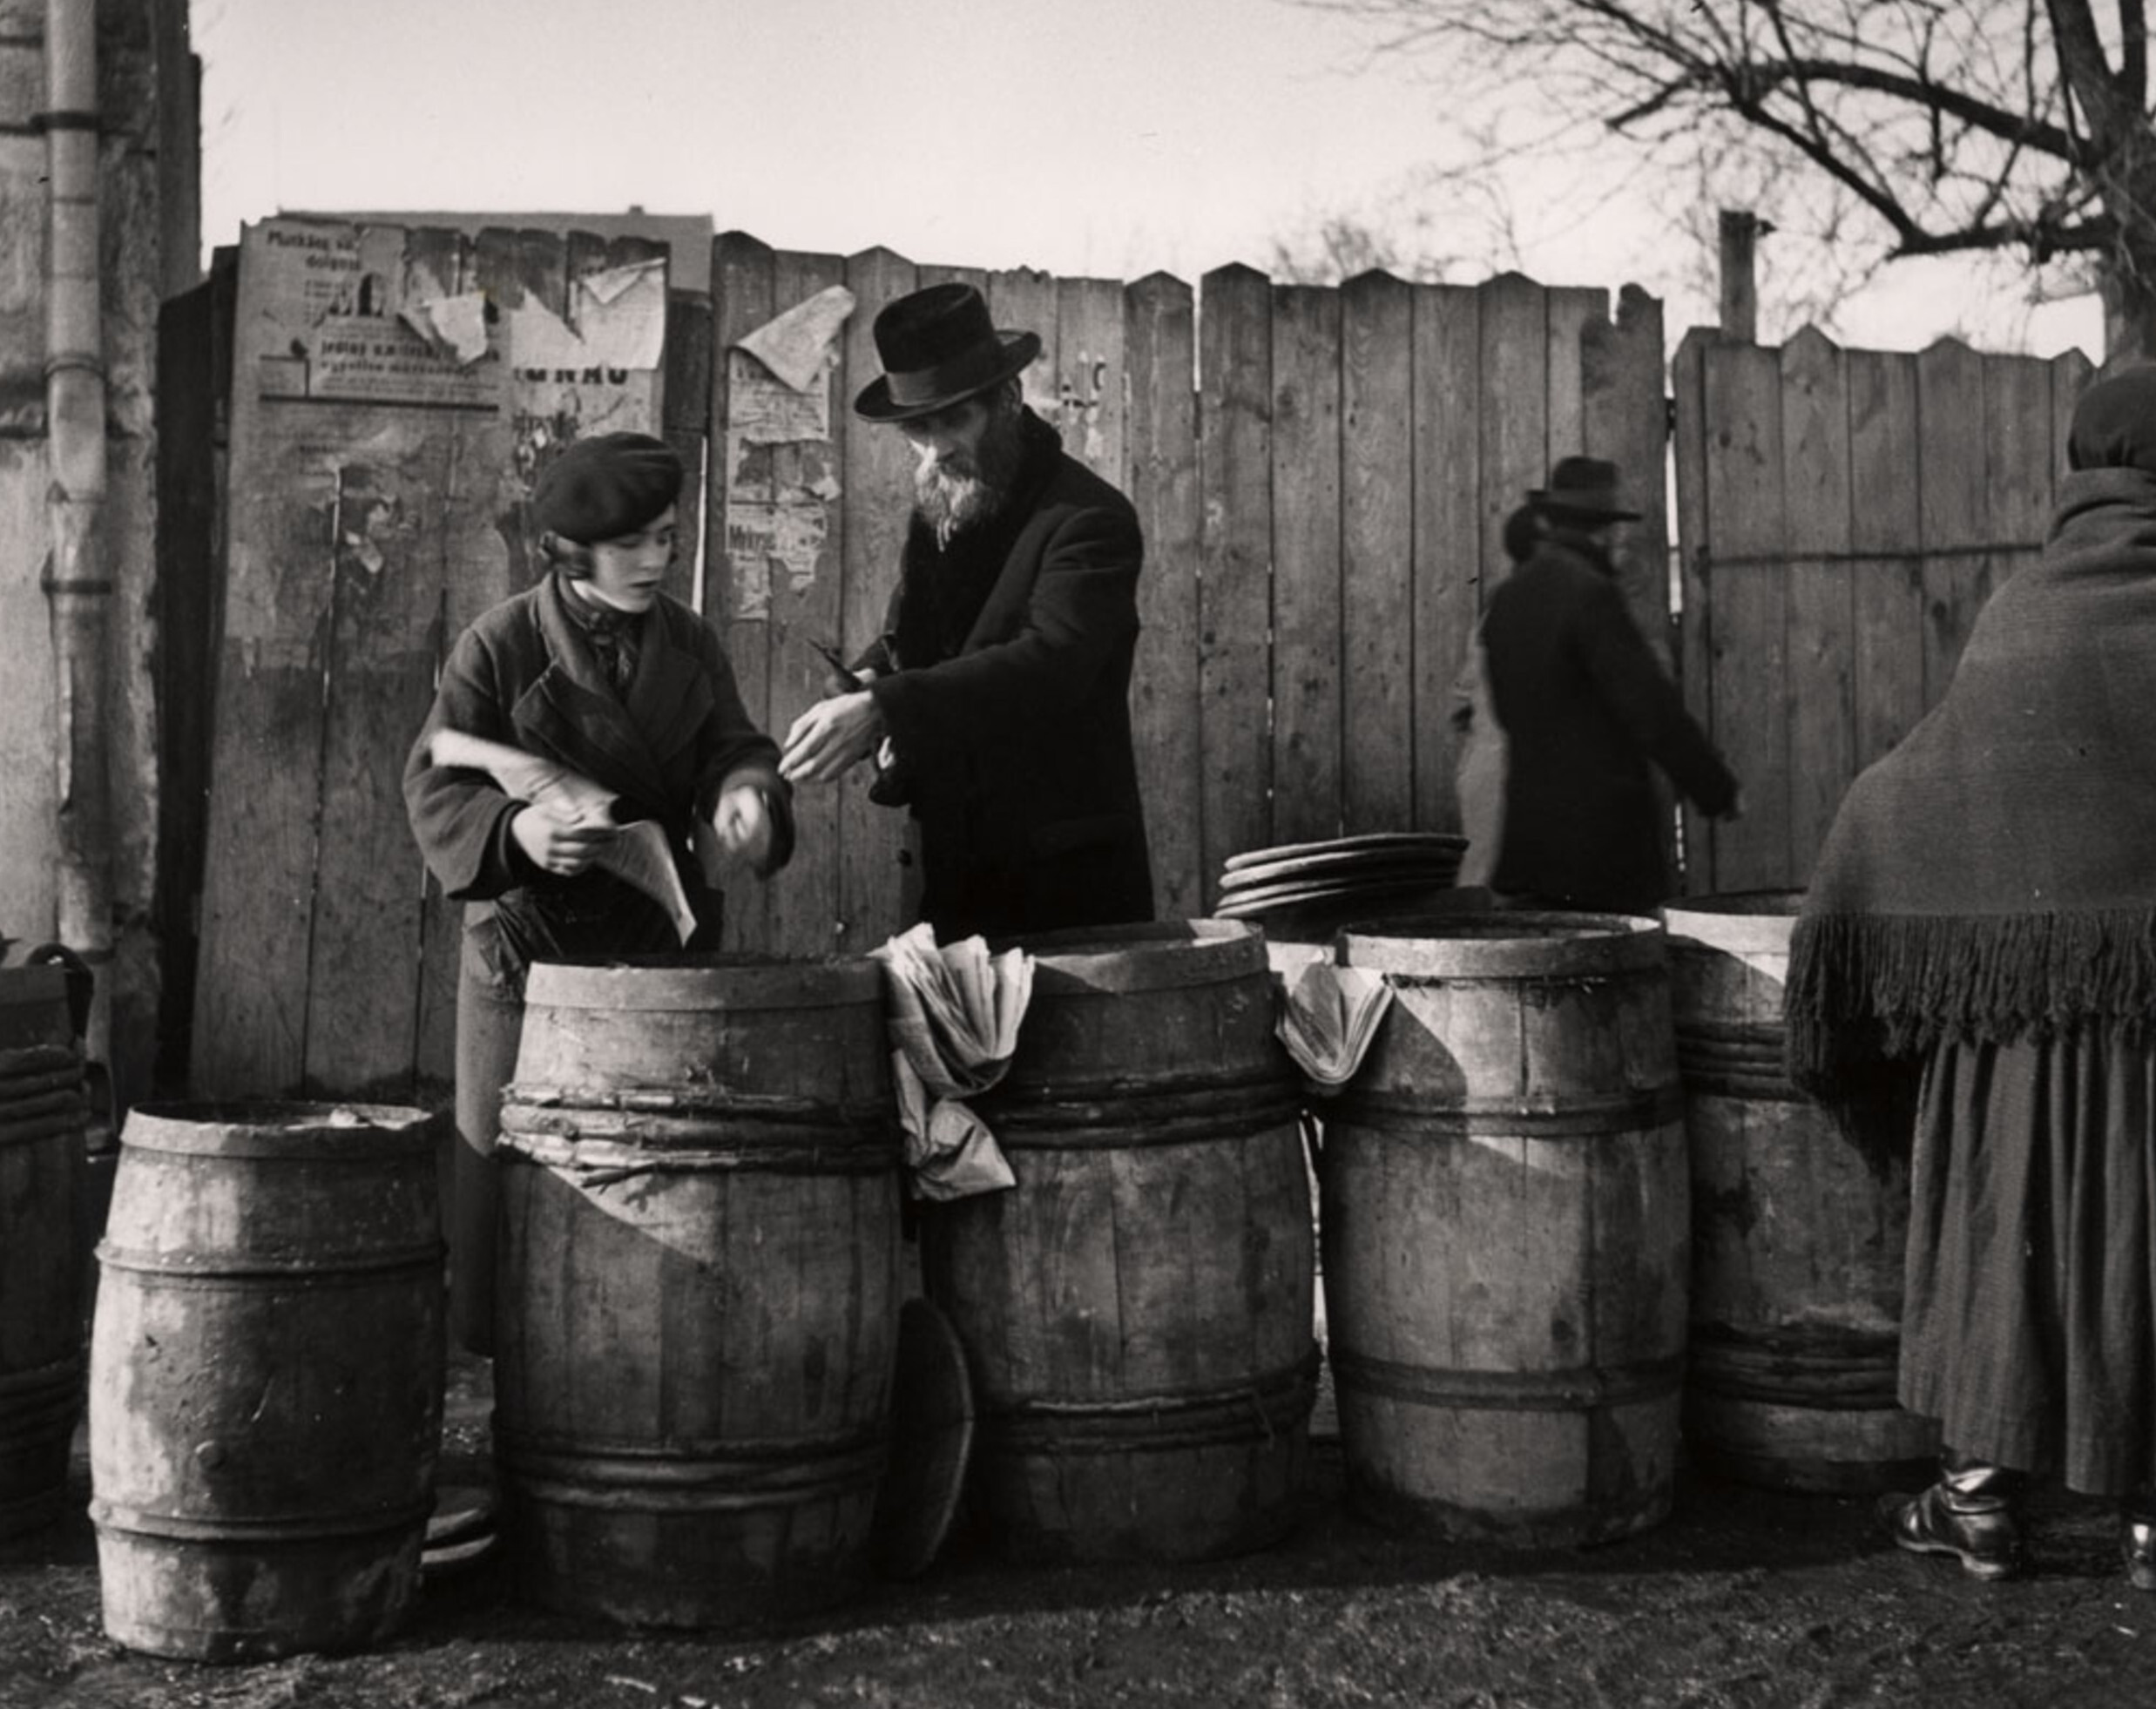 Мужчина покупает селедку, завернутую в газету, для субботней трапезы, Мукачево, ок. 1935-38 гг. Фотограф Роман Вишняк